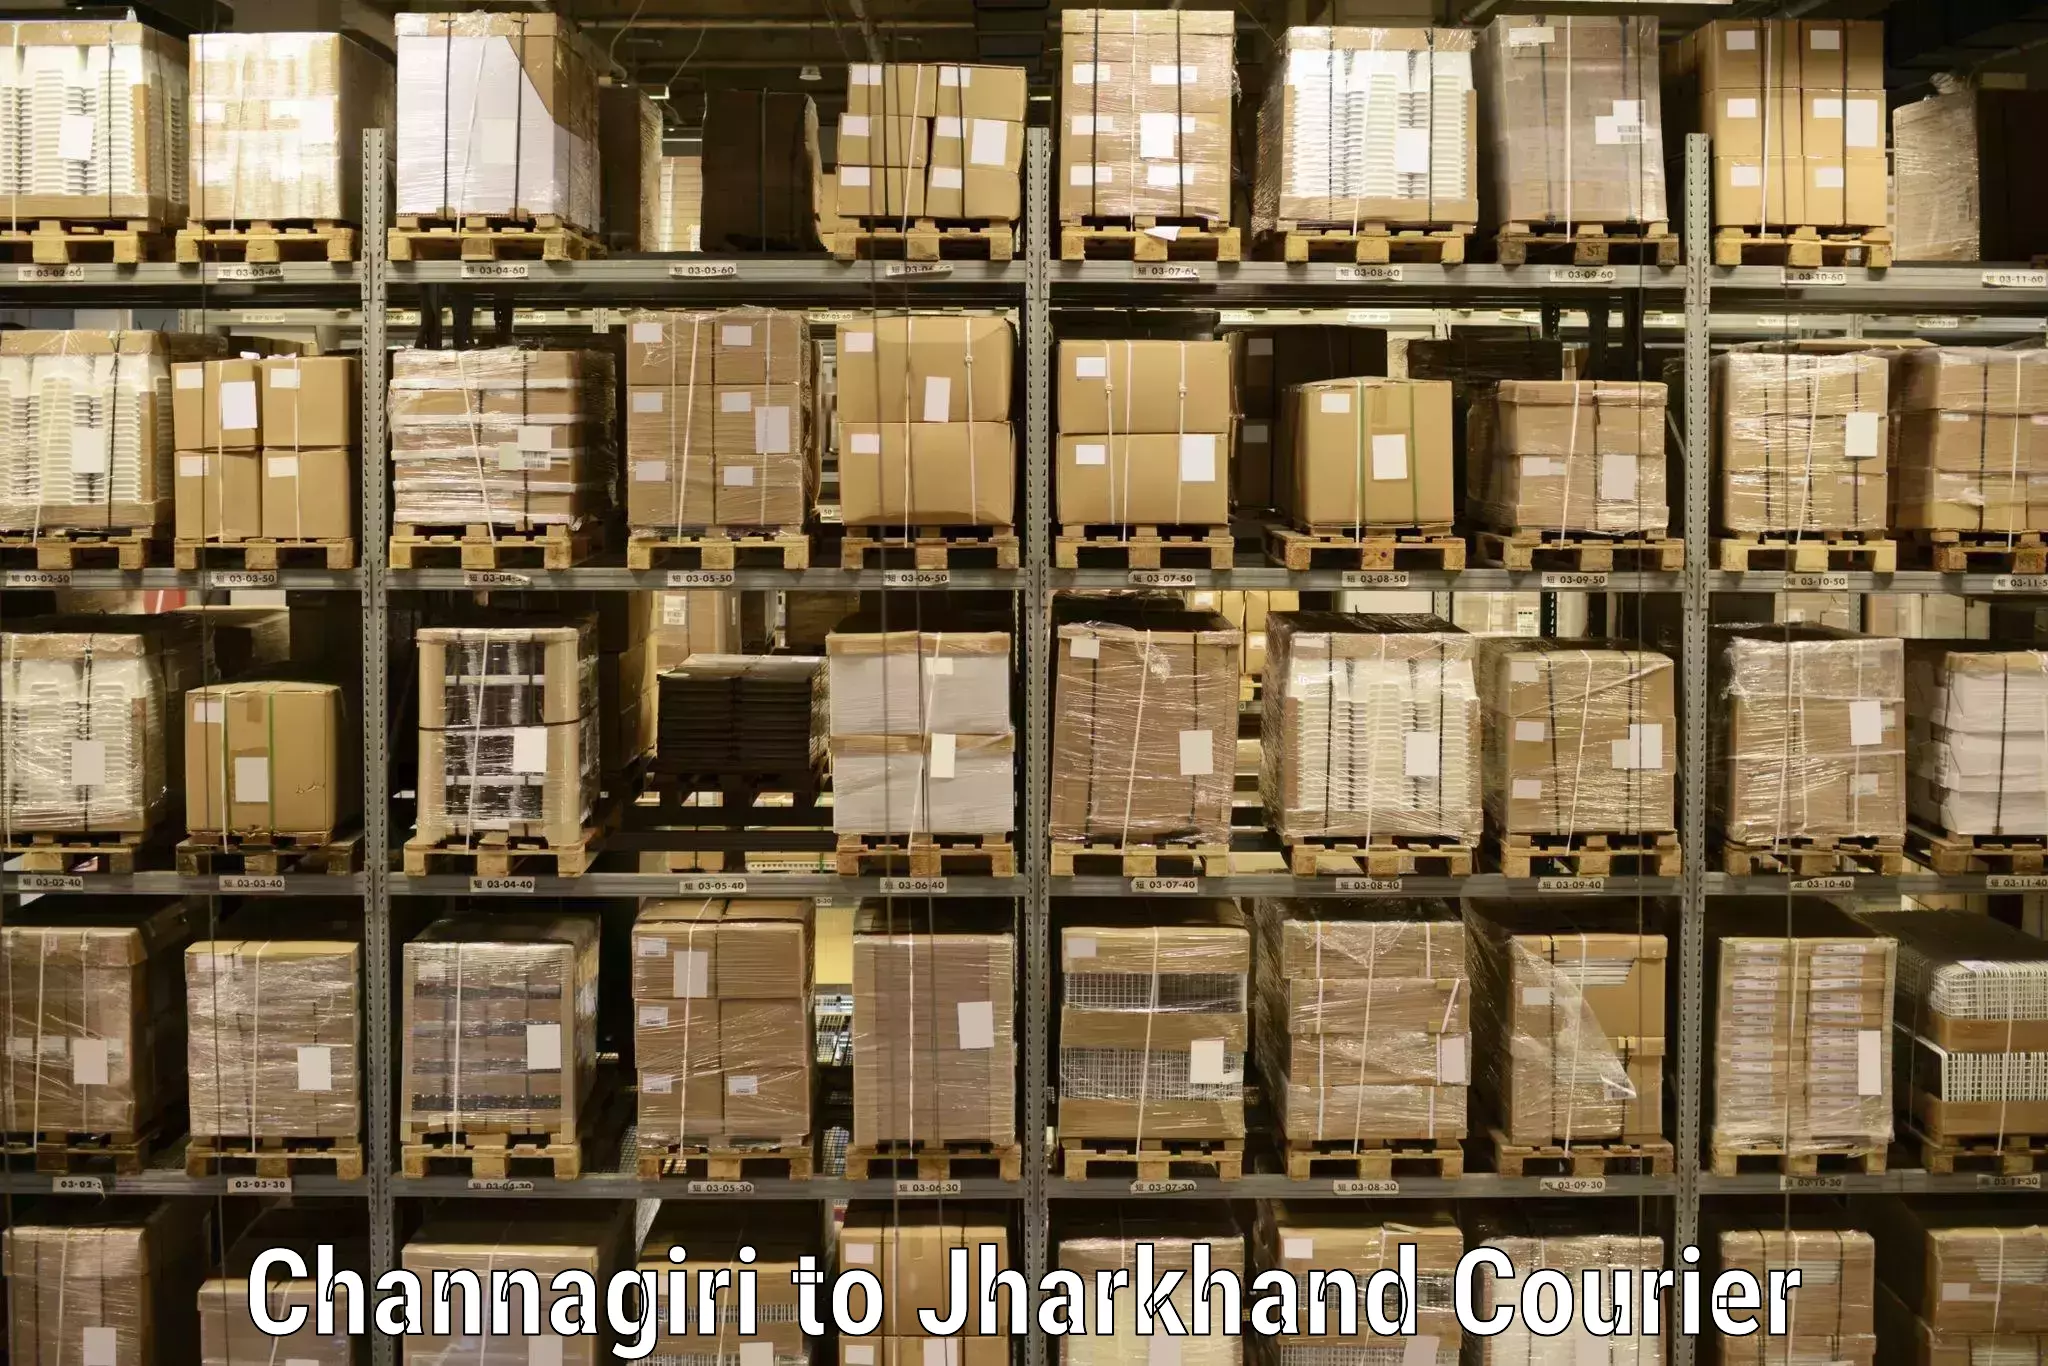 Efficient parcel service Channagiri to Domchanch